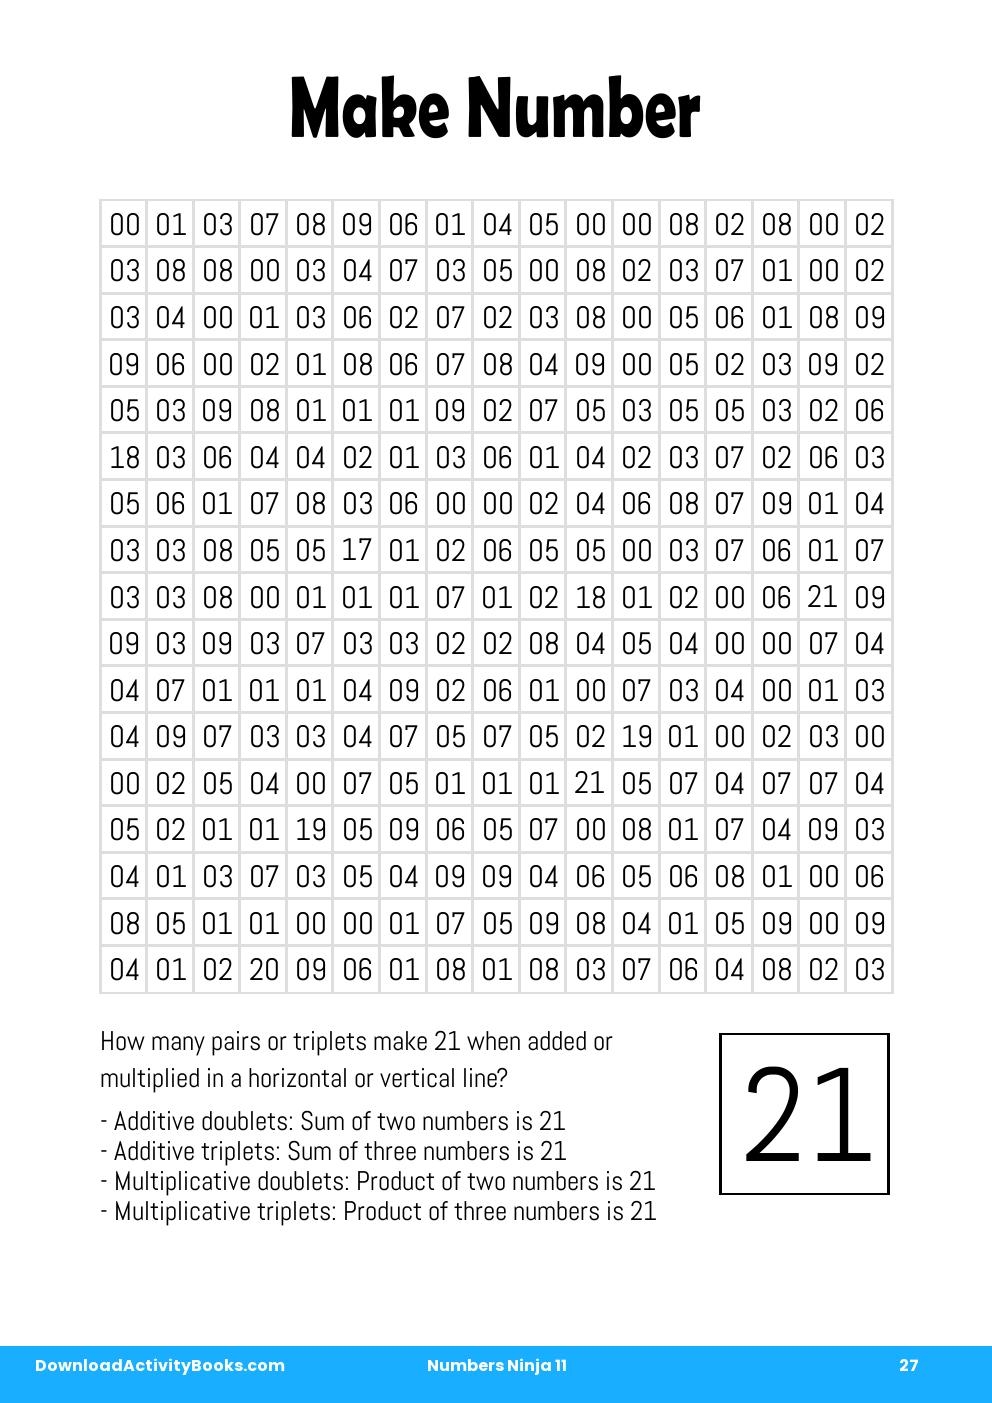 Make Number in Numbers Ninja 11